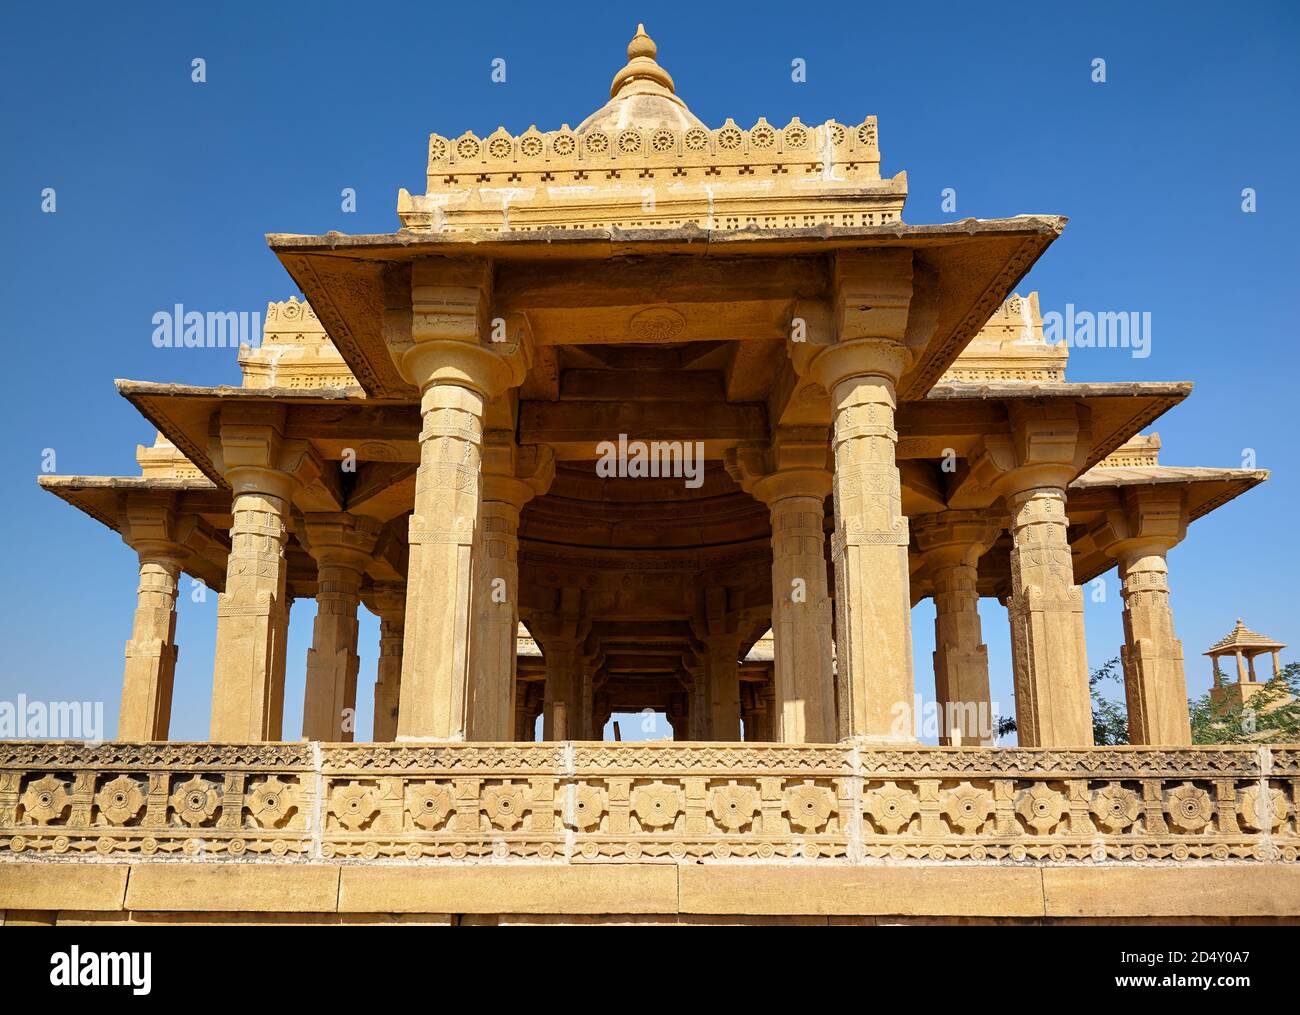 Foto di Chartis, mausoleo della tomba indù o cenotafs di Bada Bagh nel Rajastan. Architettura indo-islamica. Jaisalmer, India. Foto Stock